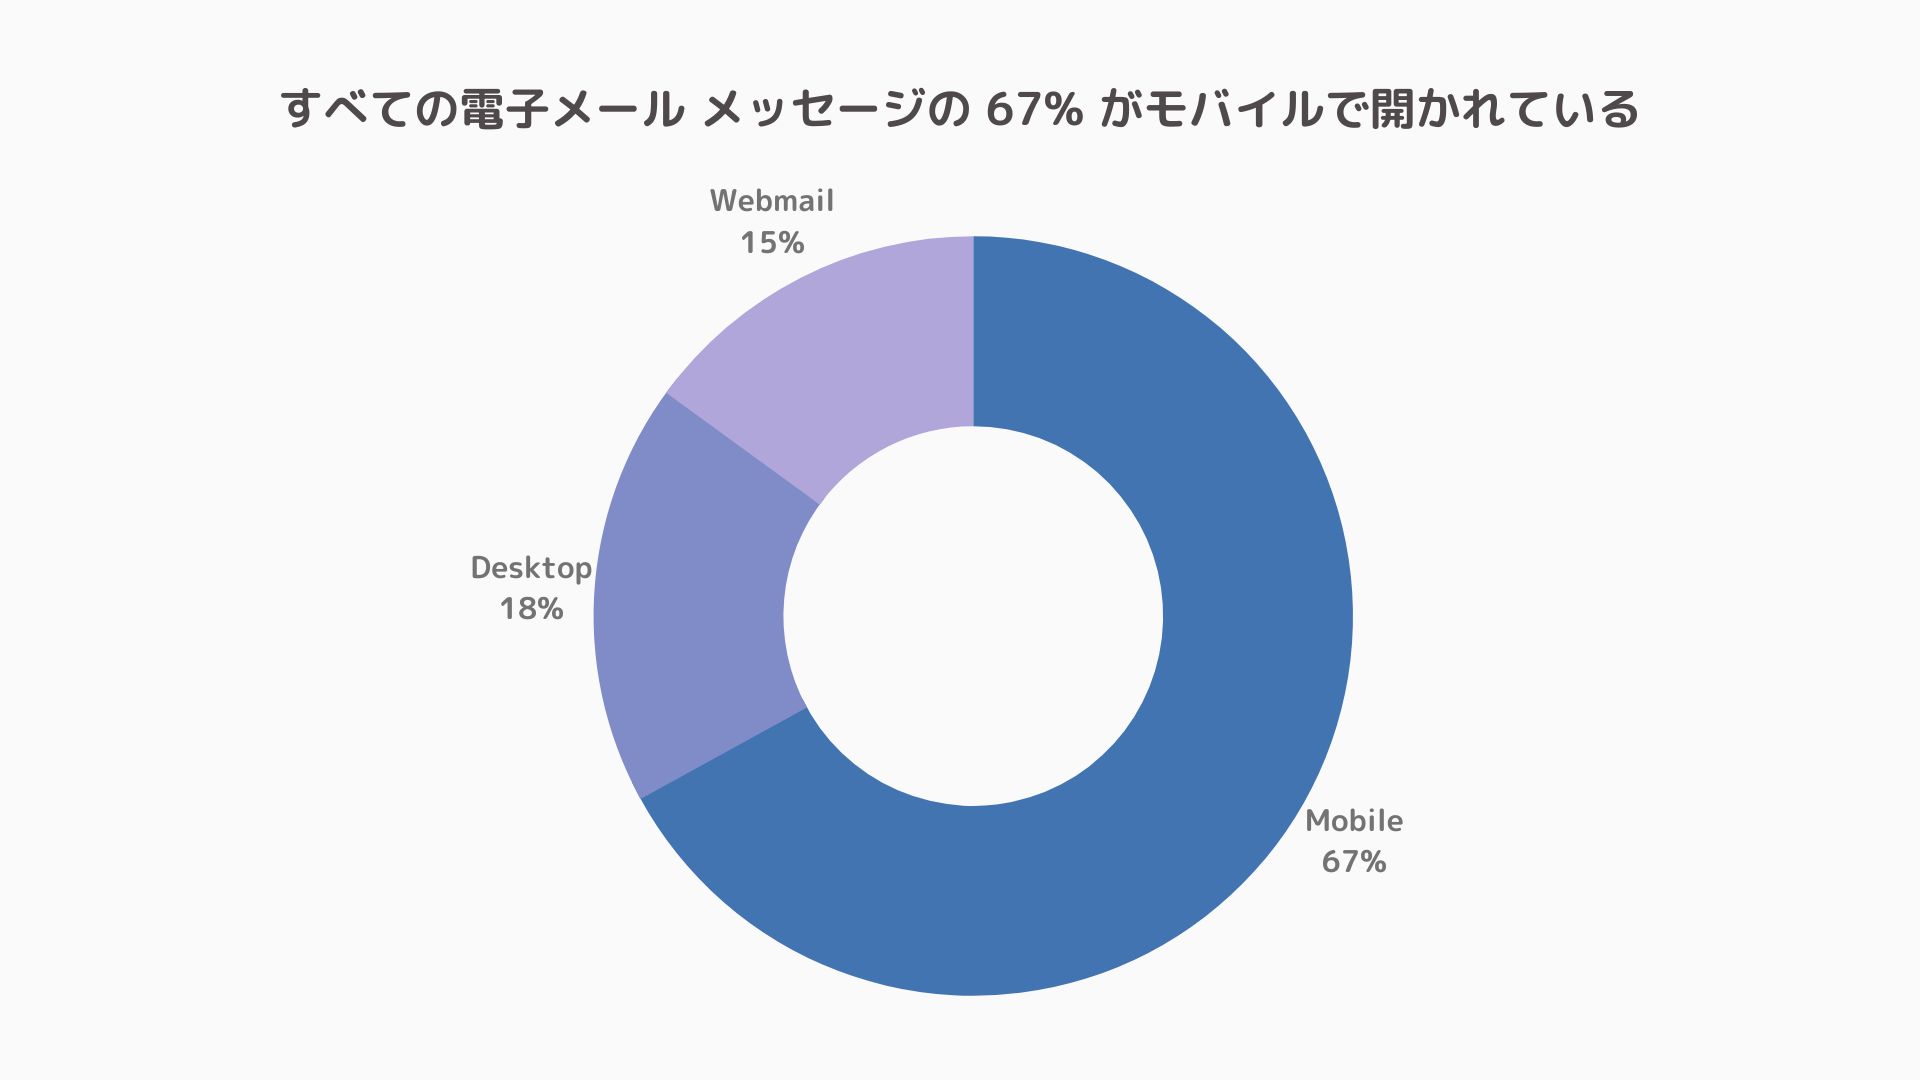 Litmus によると、すべての電子メール メッセージの 67% がモバイルで開かれています。